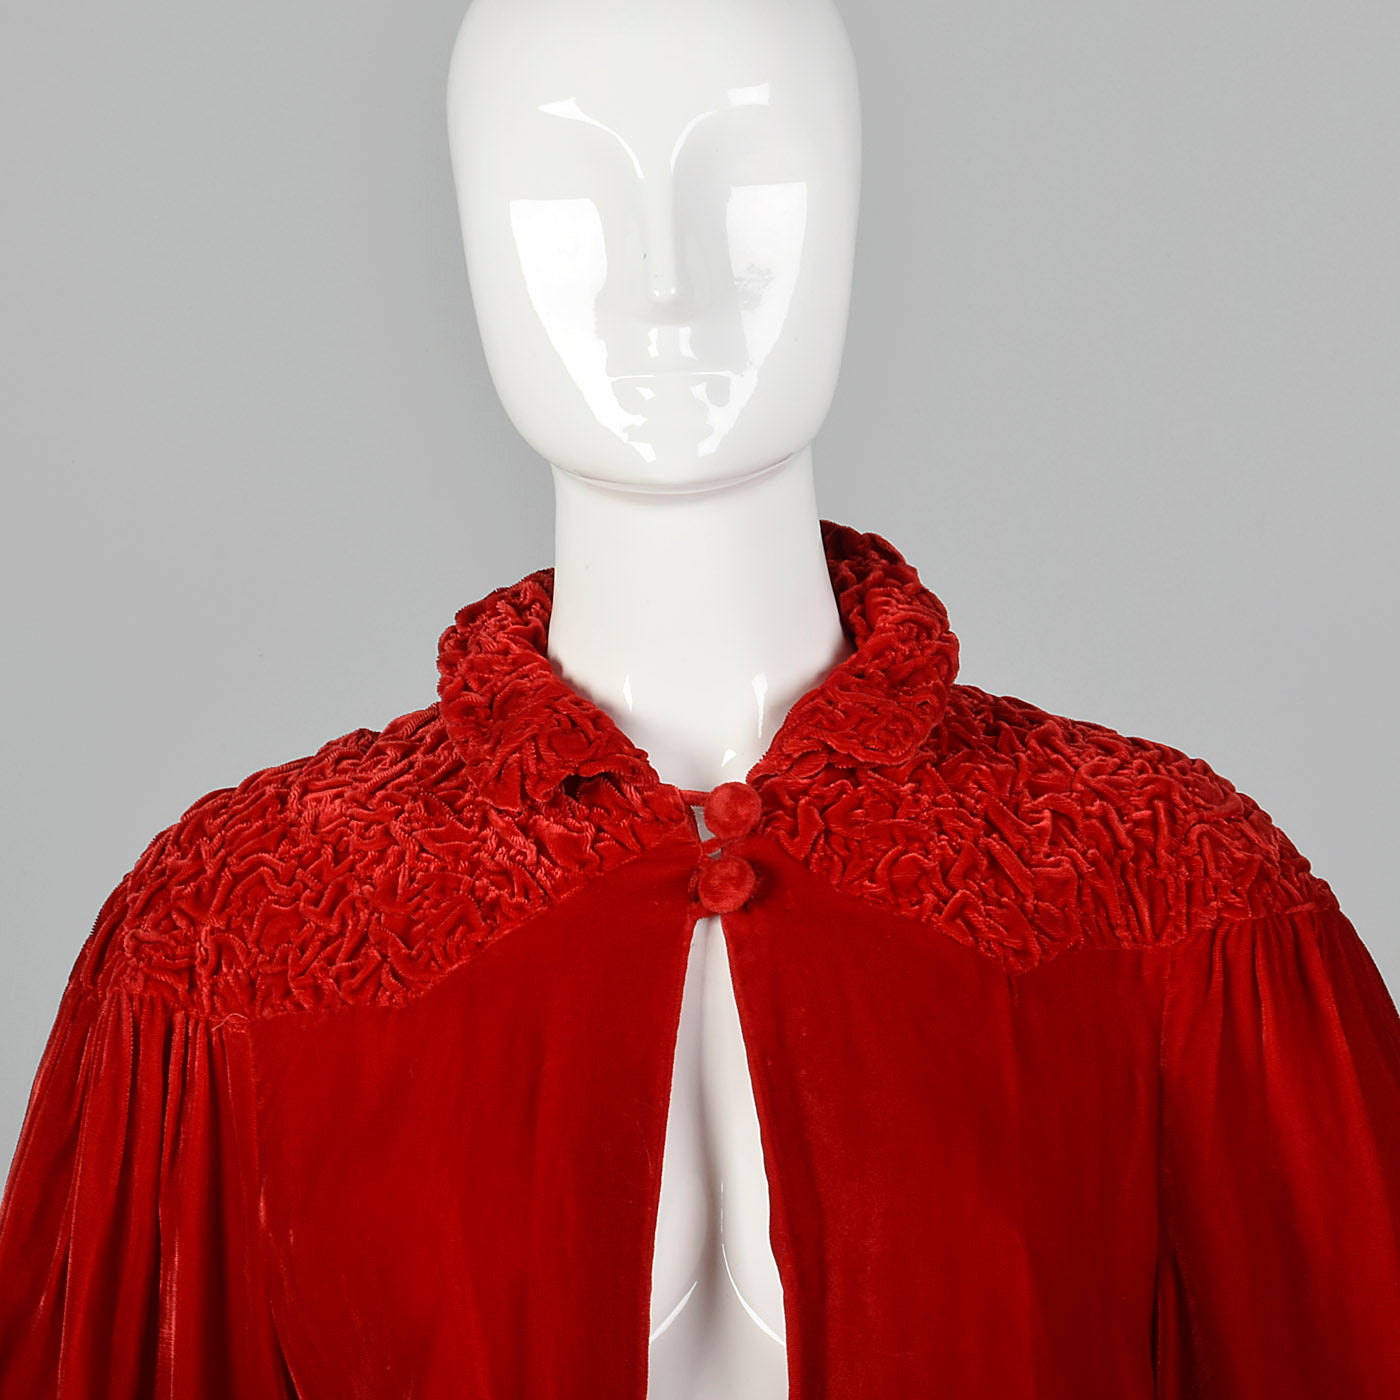 1940s Lightweight Red Velvet Swing Coat